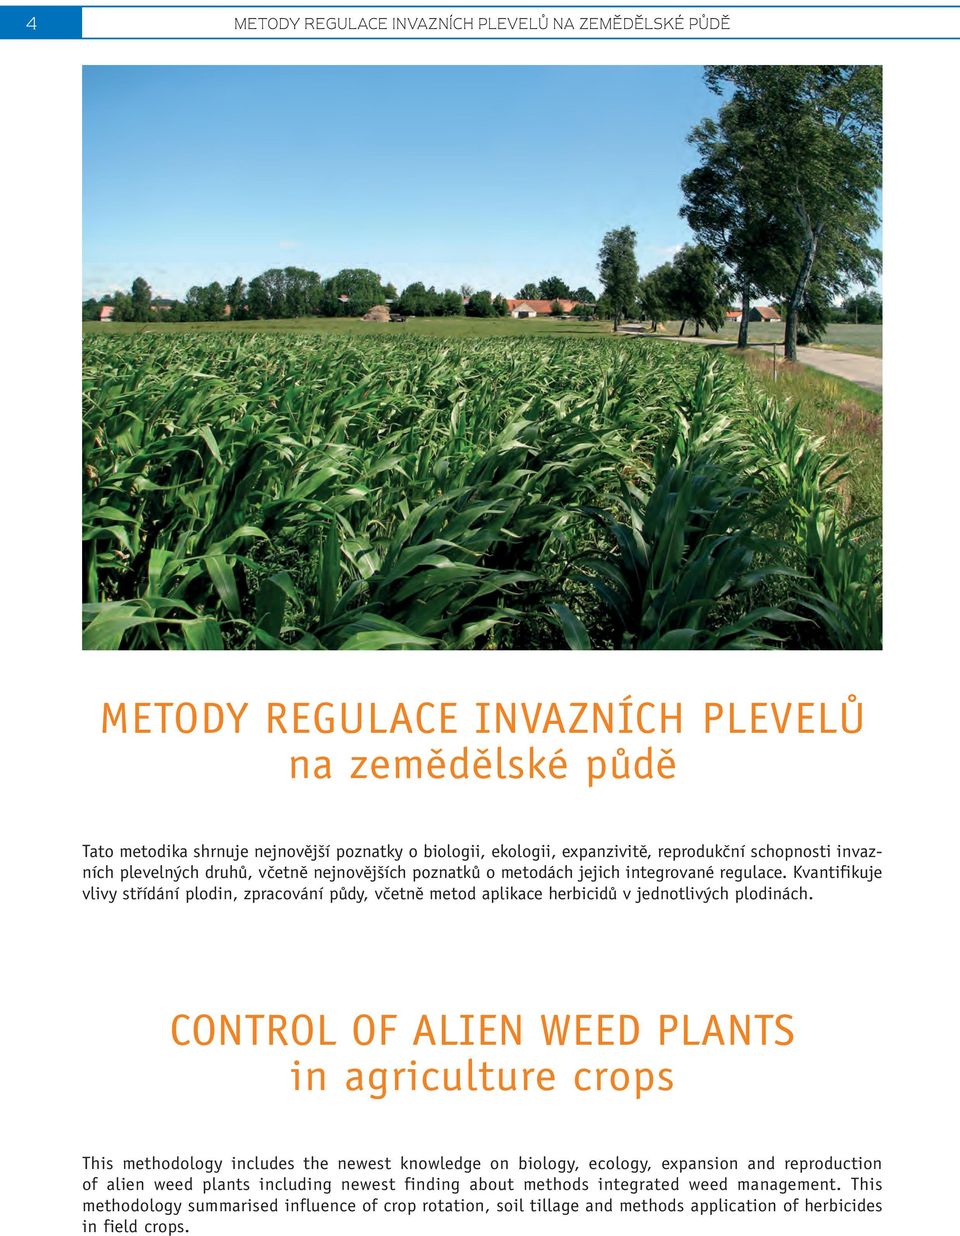 Kvantifikuje vlivy stfiídání plodin, zpracování pûdy, vãetnû metod aplikace herbicidû v jednotliv ch plodinách.